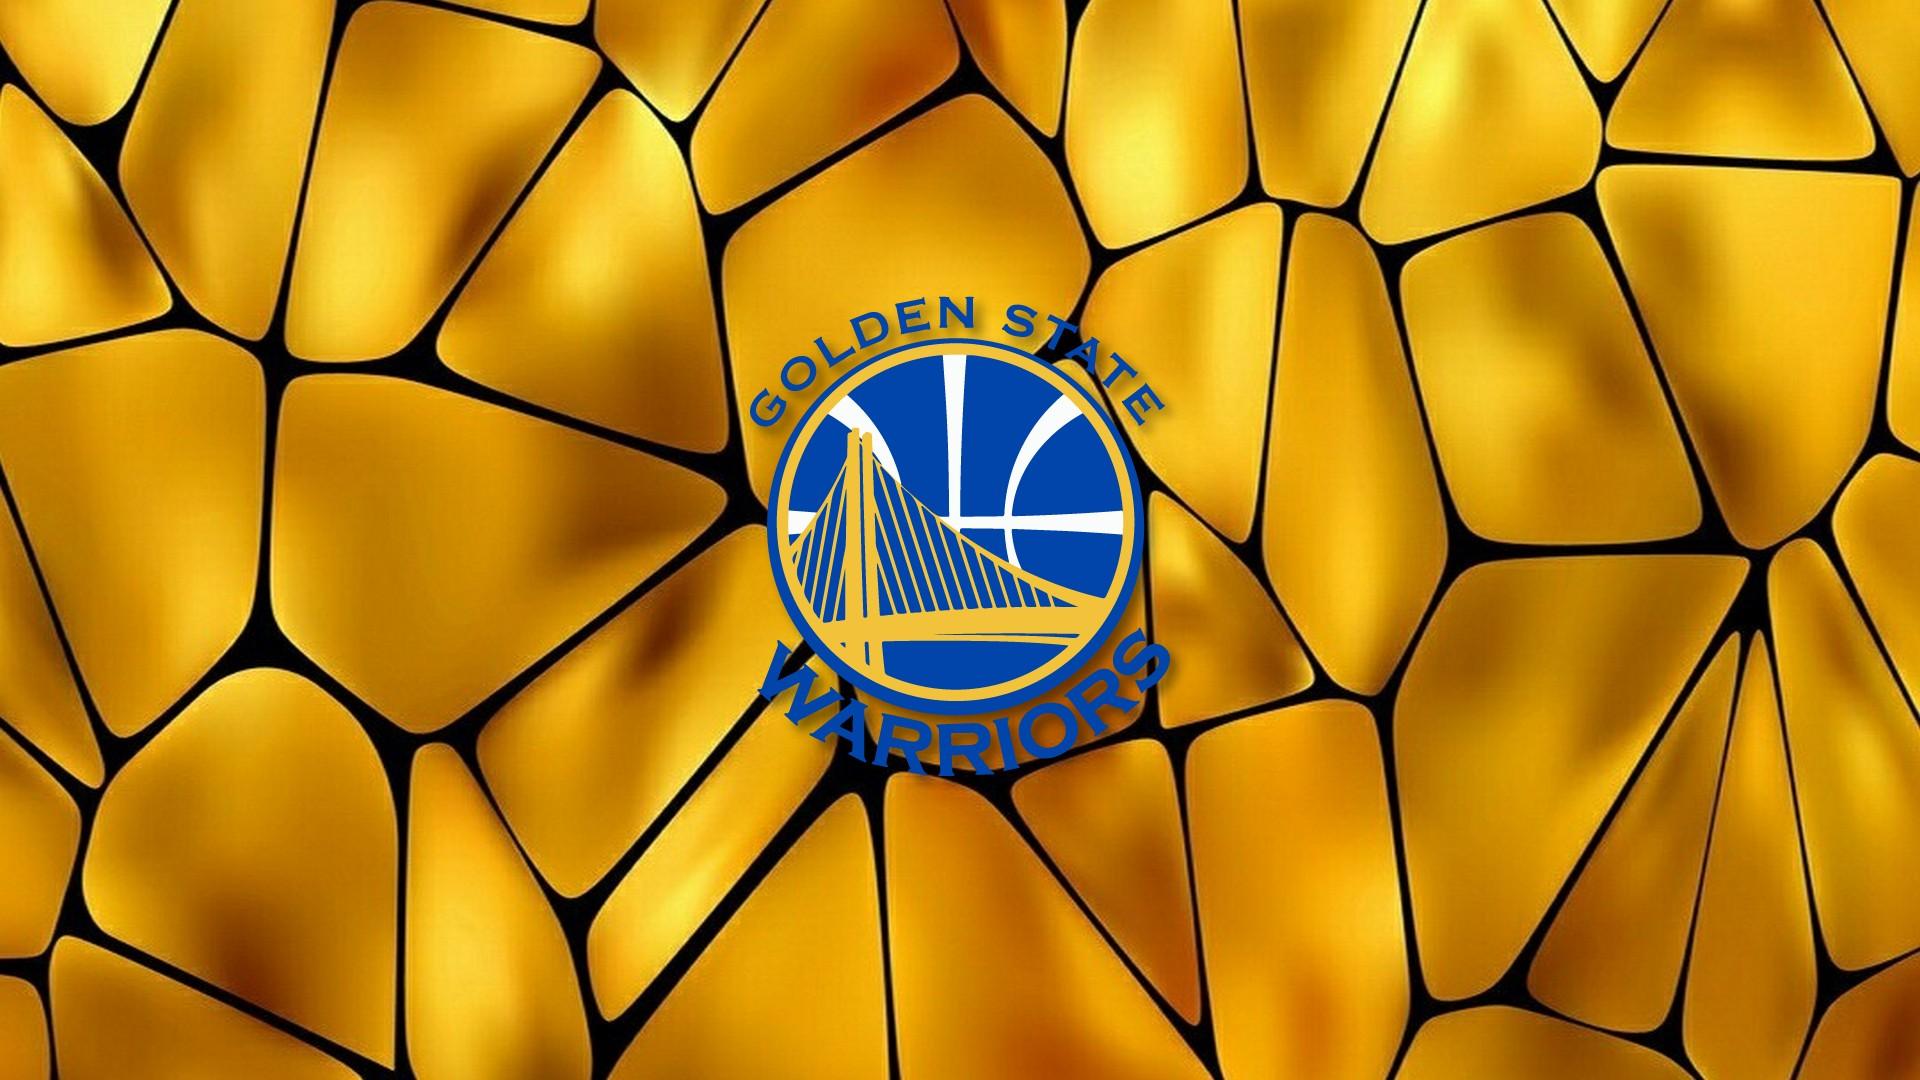 HD Desktop Wallpaper Golden State Warriors Logo Basketball